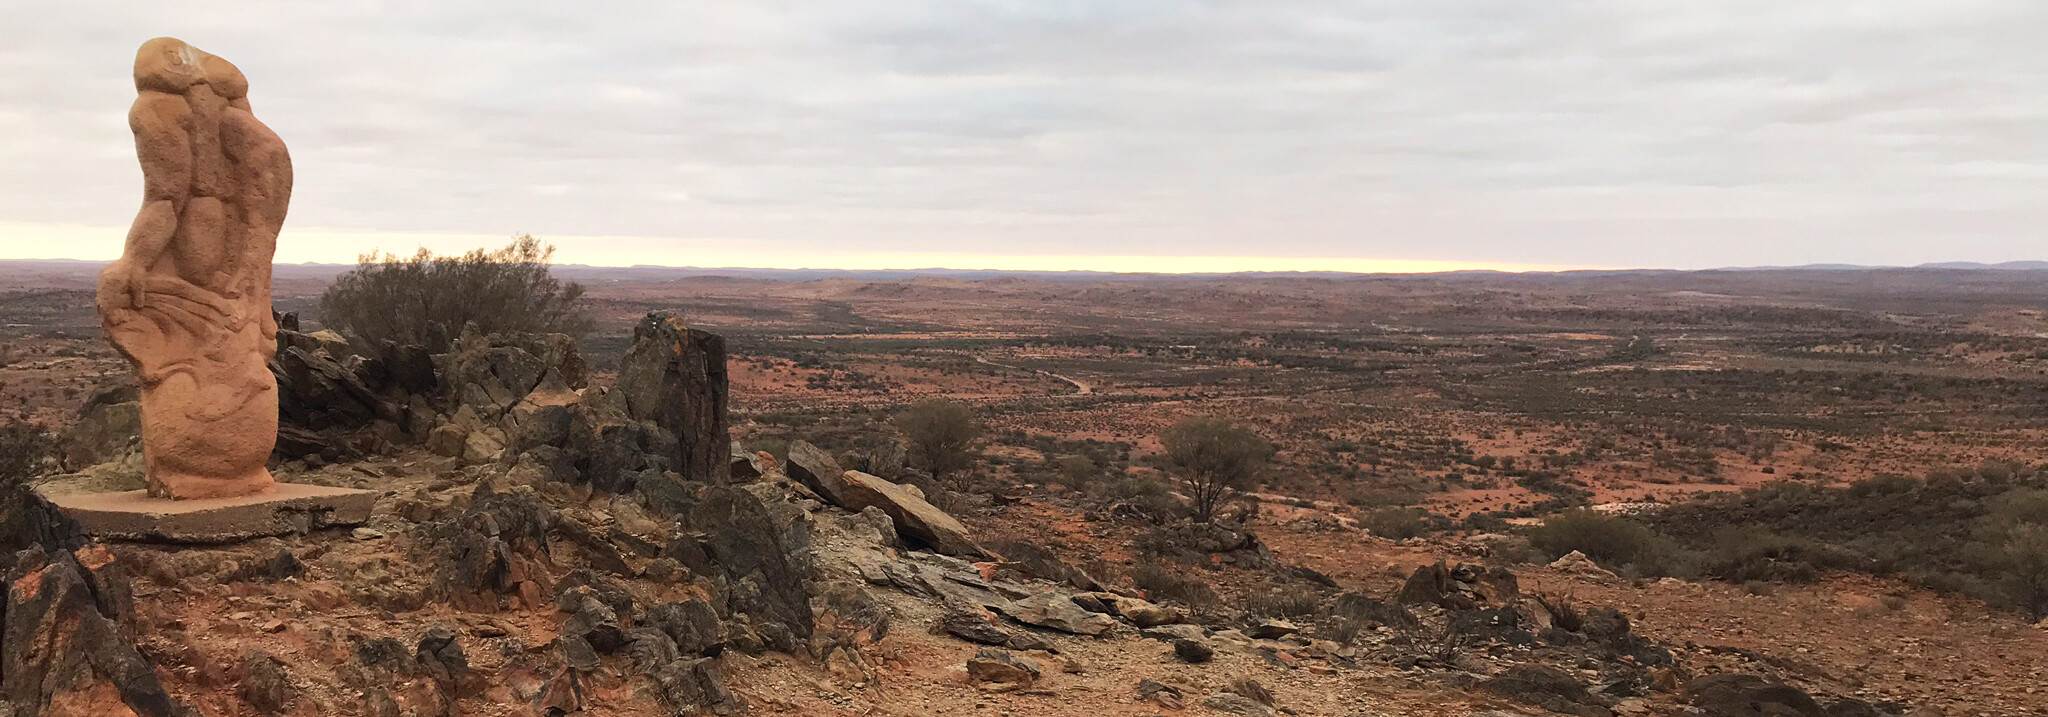 Reisebericht Australien - Broken Hill Living Desert Skulpturenpark